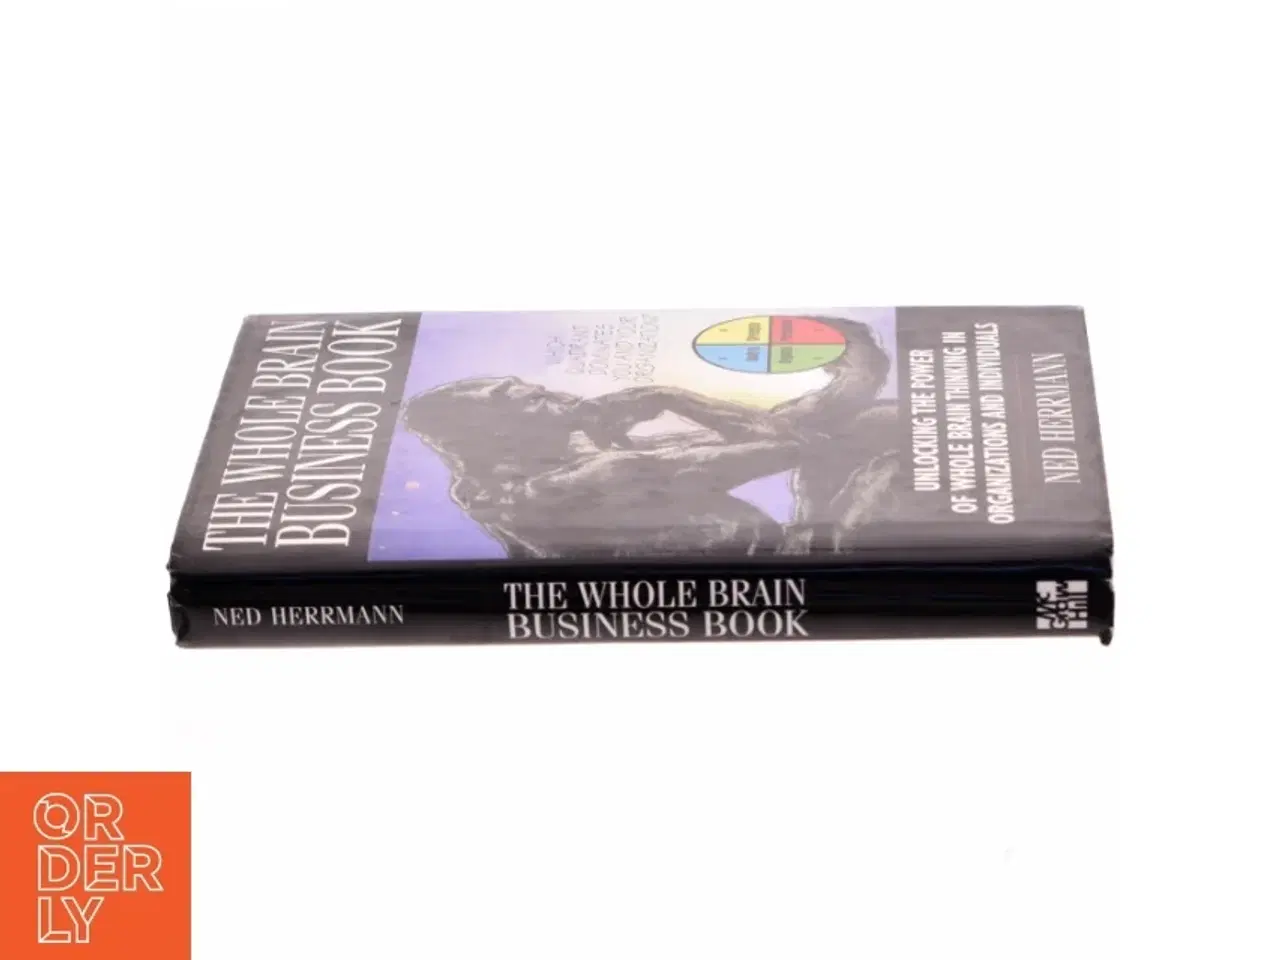 Billede 2 - The whole brain business book af Ned Herrmann (Bog)